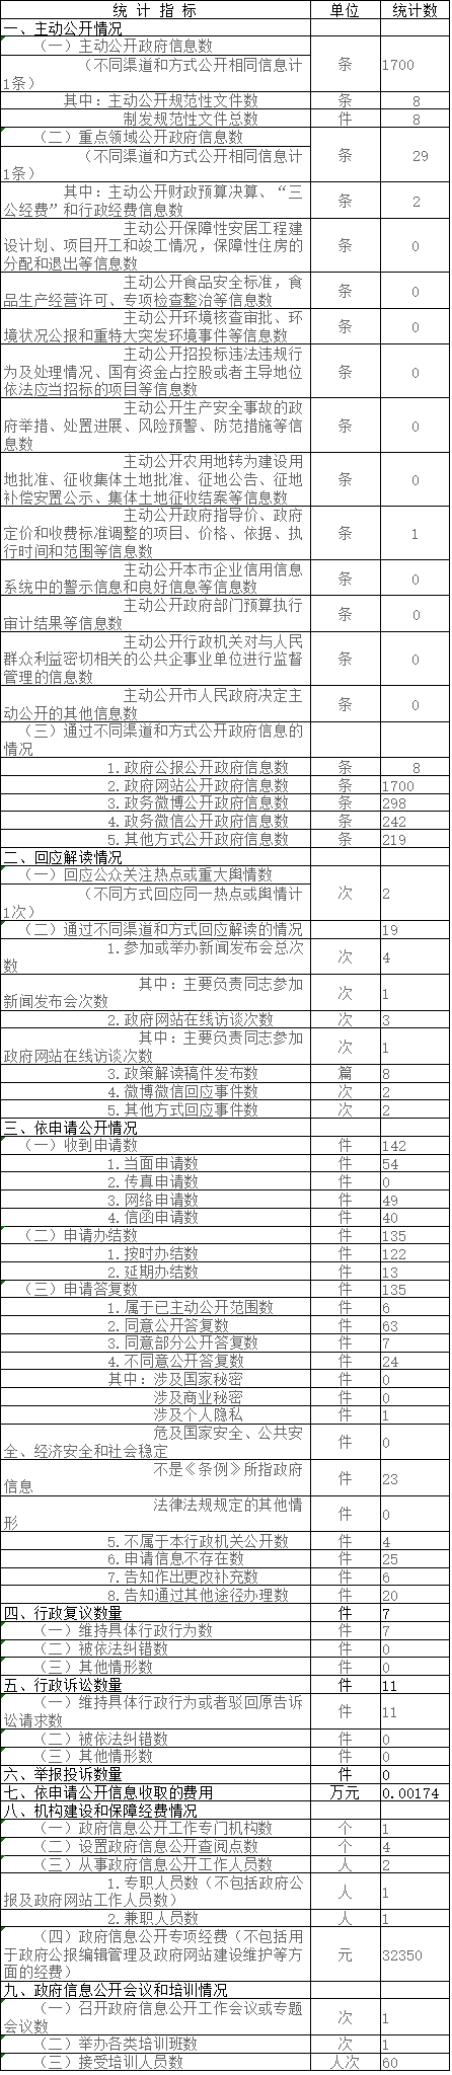 北京市司法局政府信息公开情况统计表(2017年度)